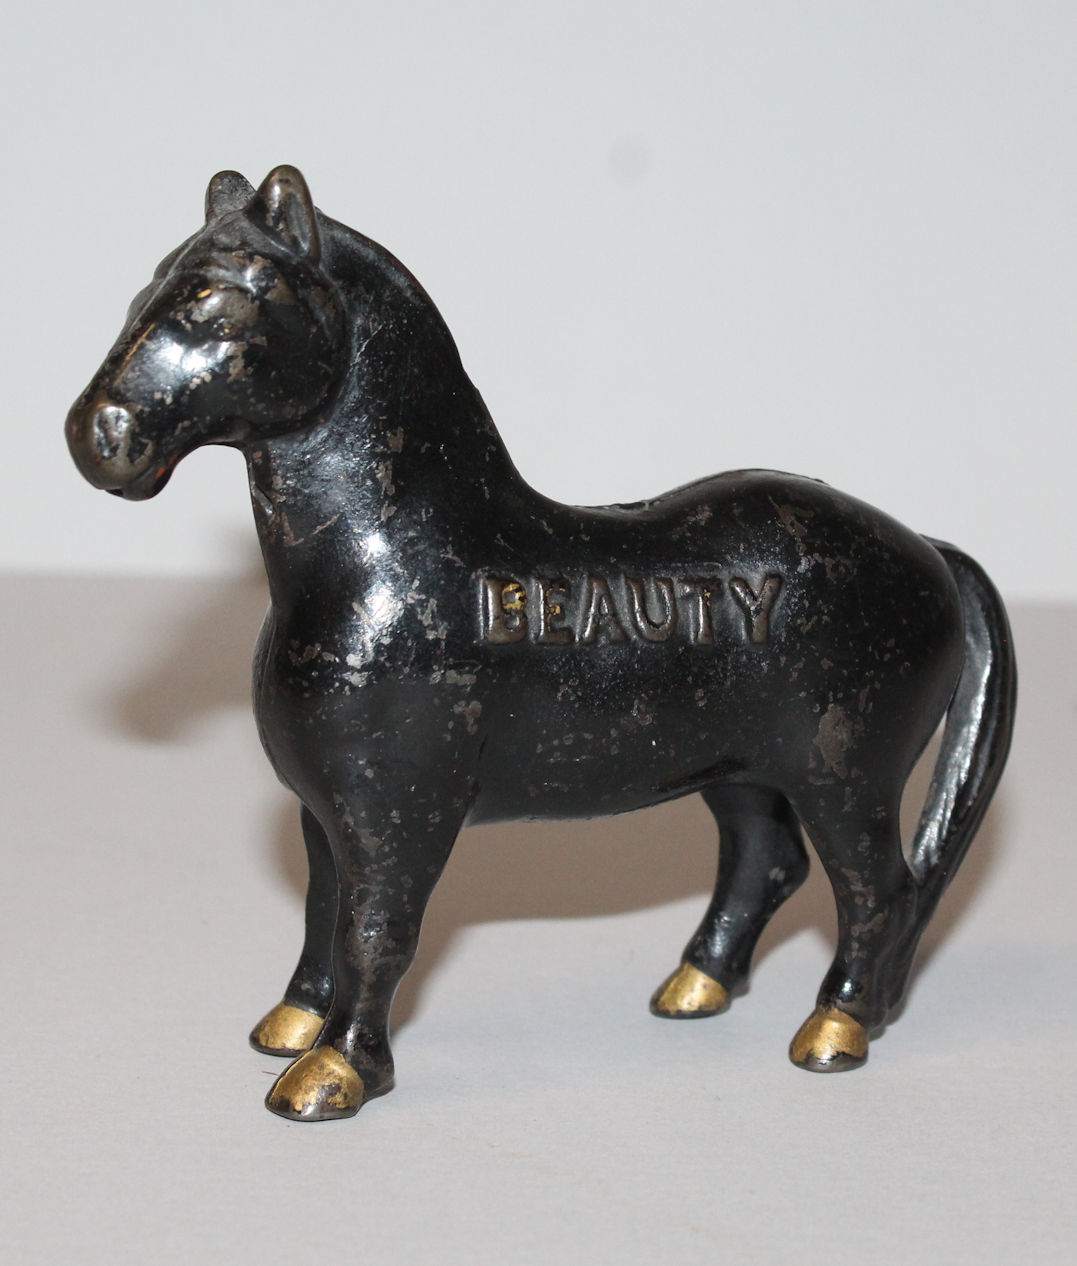 Bargain John's Antiques  Antique Black “Beauty” Horse Coin Bank